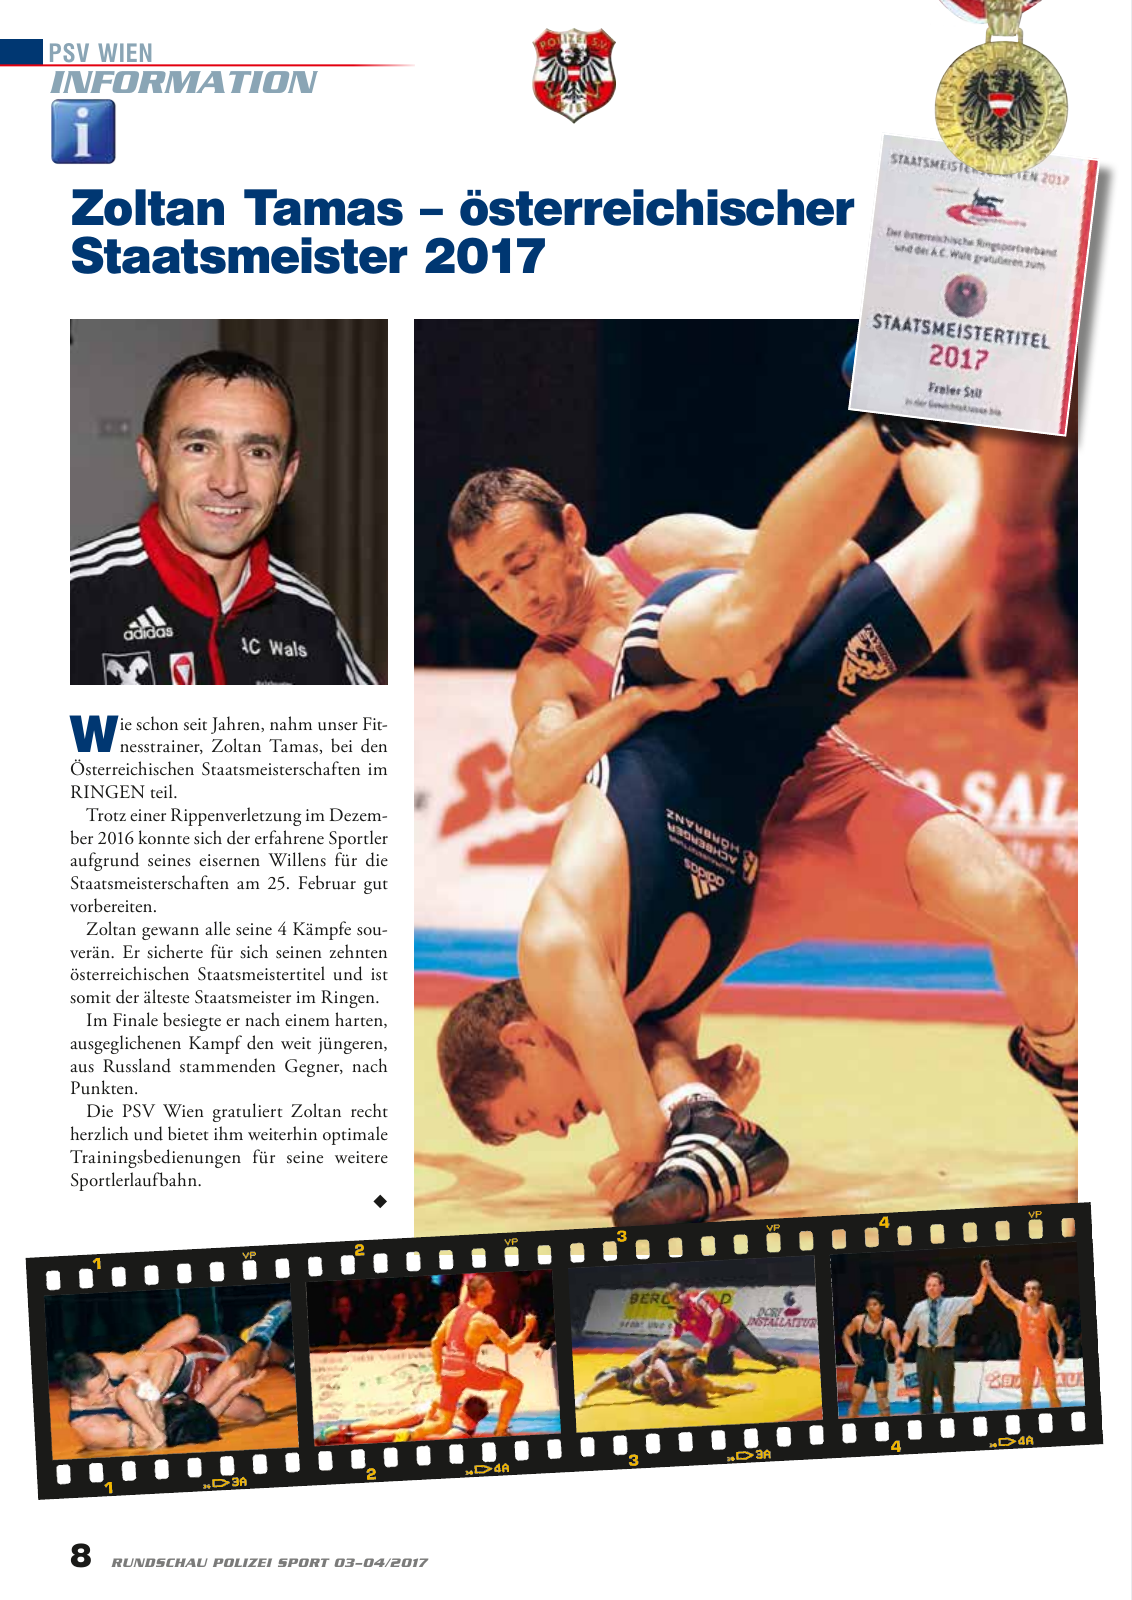 Vorschau Rundschau Polizei Sport 03-04/2017 Seite 8